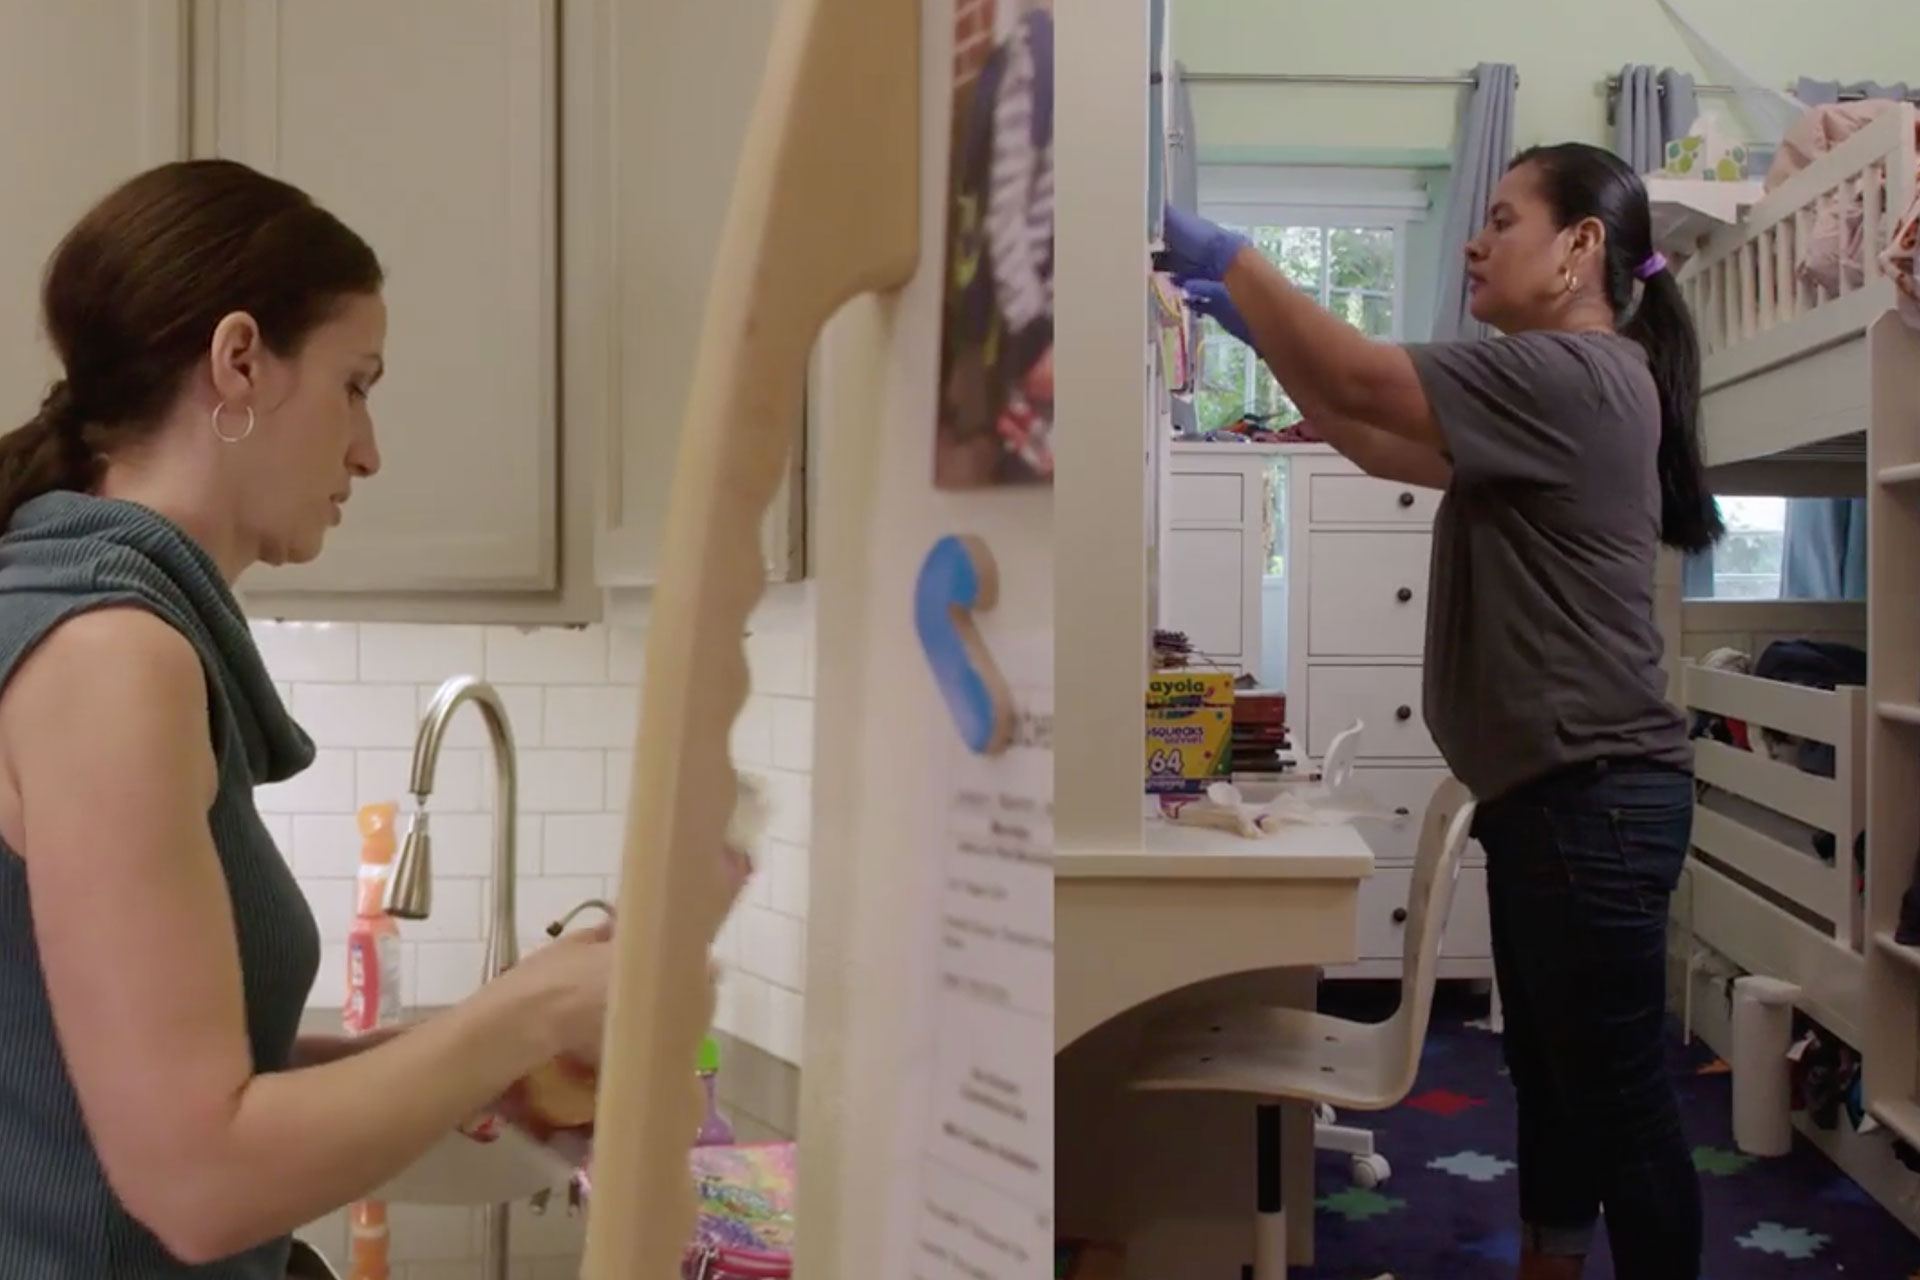 Een videopreview voor Alia, het platform voor voordelen en verzekeringen voor huishoudelijk personeel